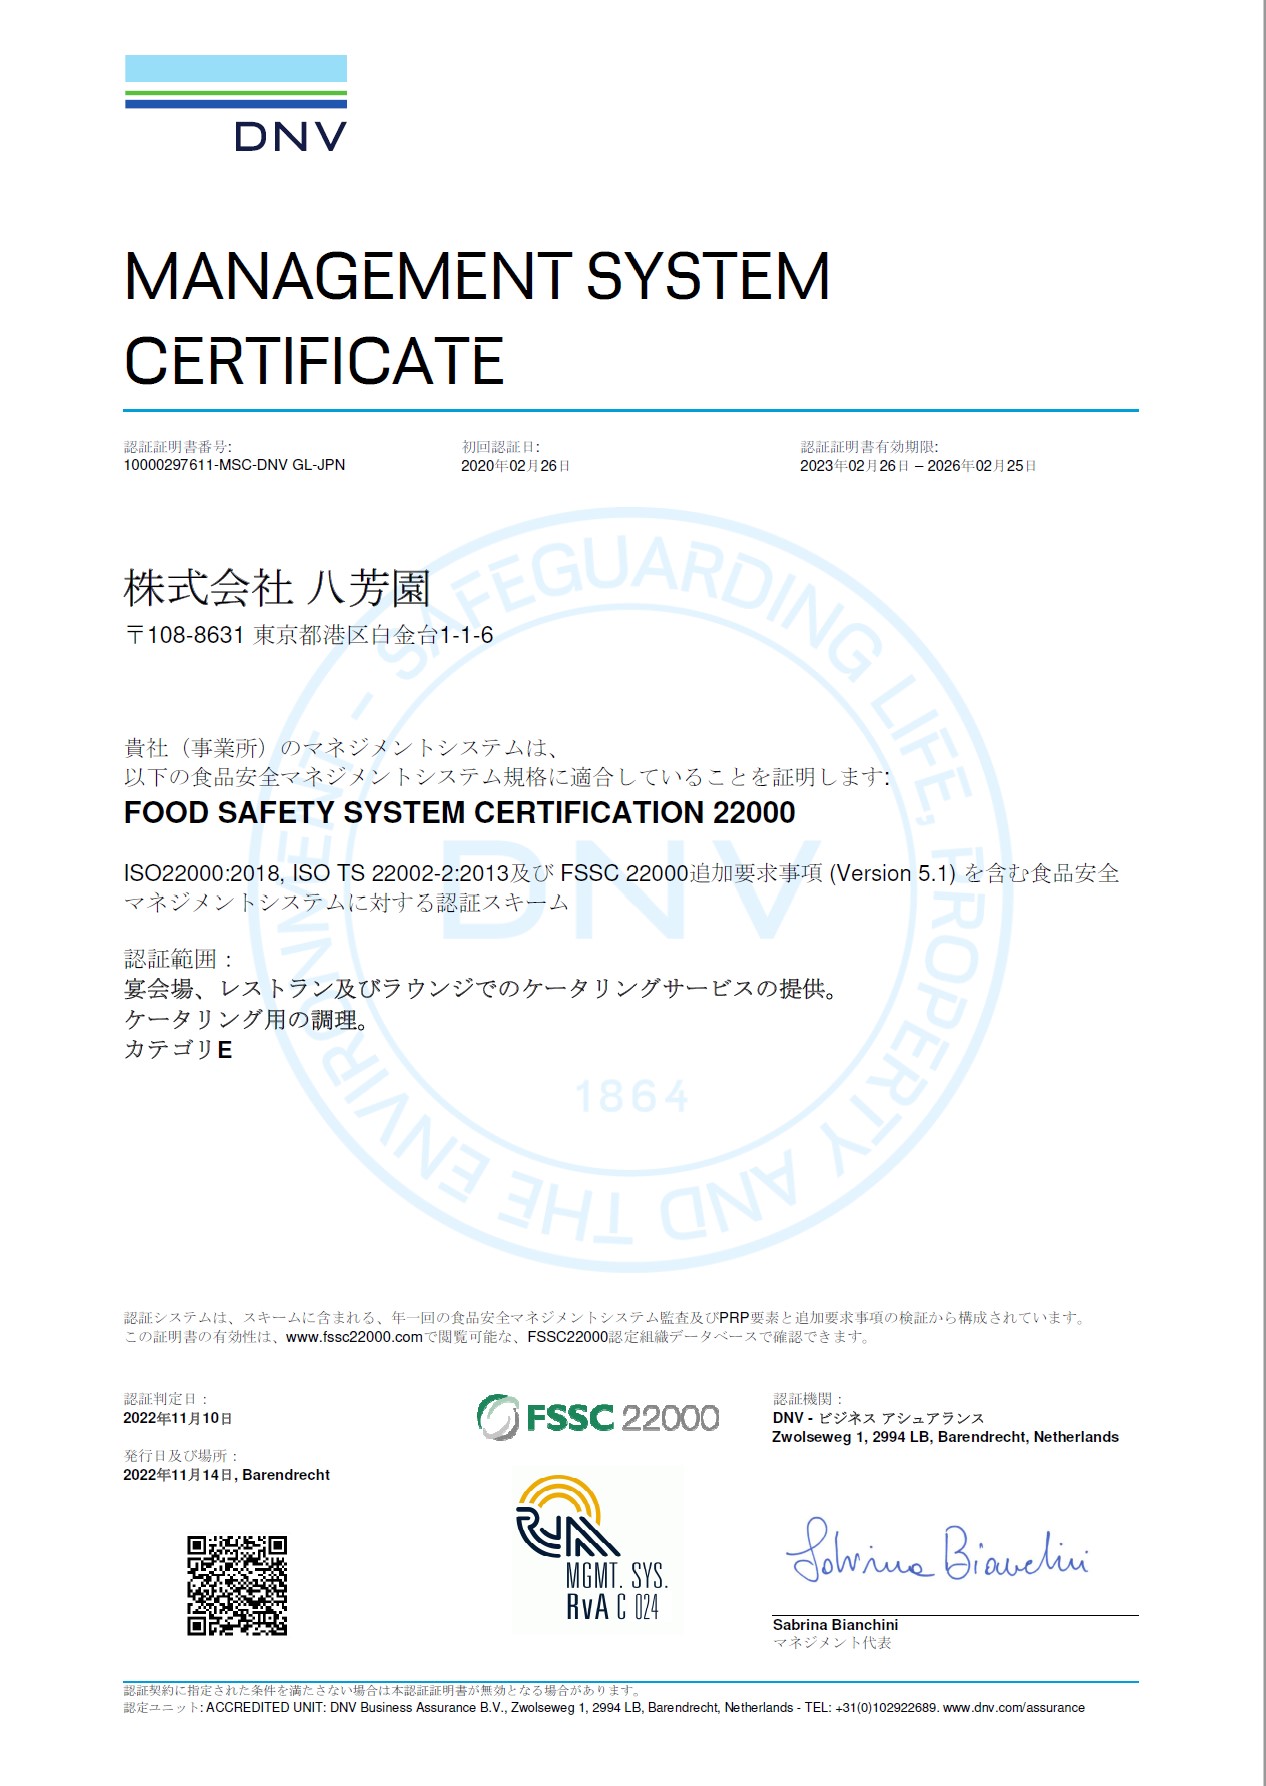 FSSC22000（カテゴリーE）認証取得